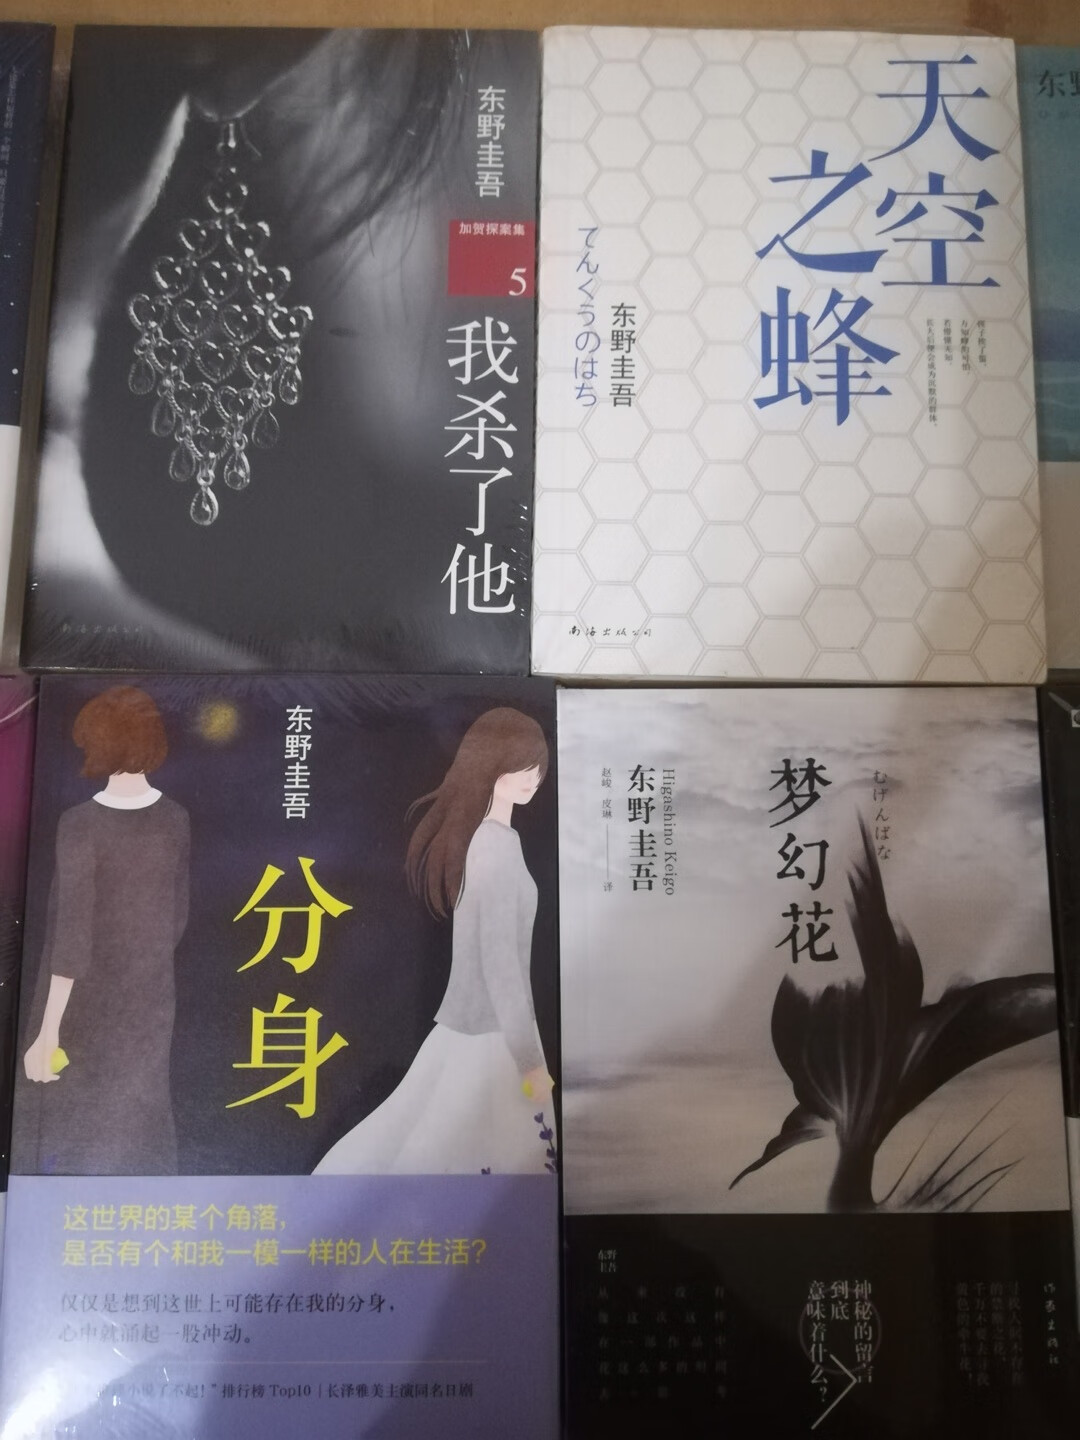 非常好看，很喜欢东野圭*的书。